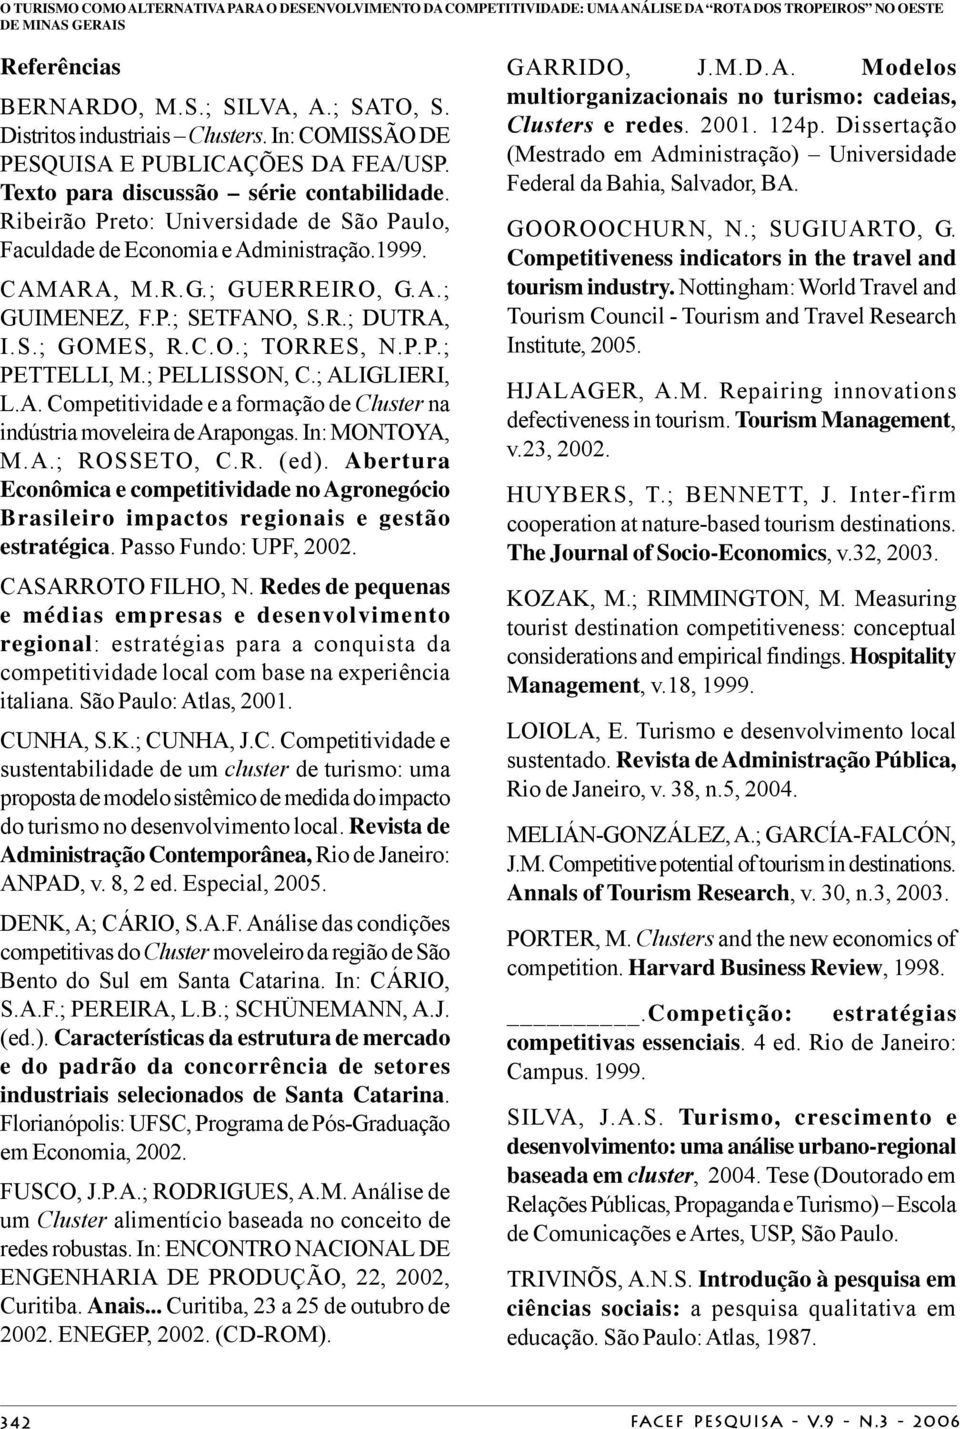 A.; GUMENEZ, F.P.; SETFANO, S.R.; DUTRA,.S.; GOMES, R.C.O.; TORRES, N.P.P.; PETTELL, M.; PELLSSON, C.; ALGLER, L.A. Cometitividade e a formação de Cluster na indústria moveleira de Araongas.